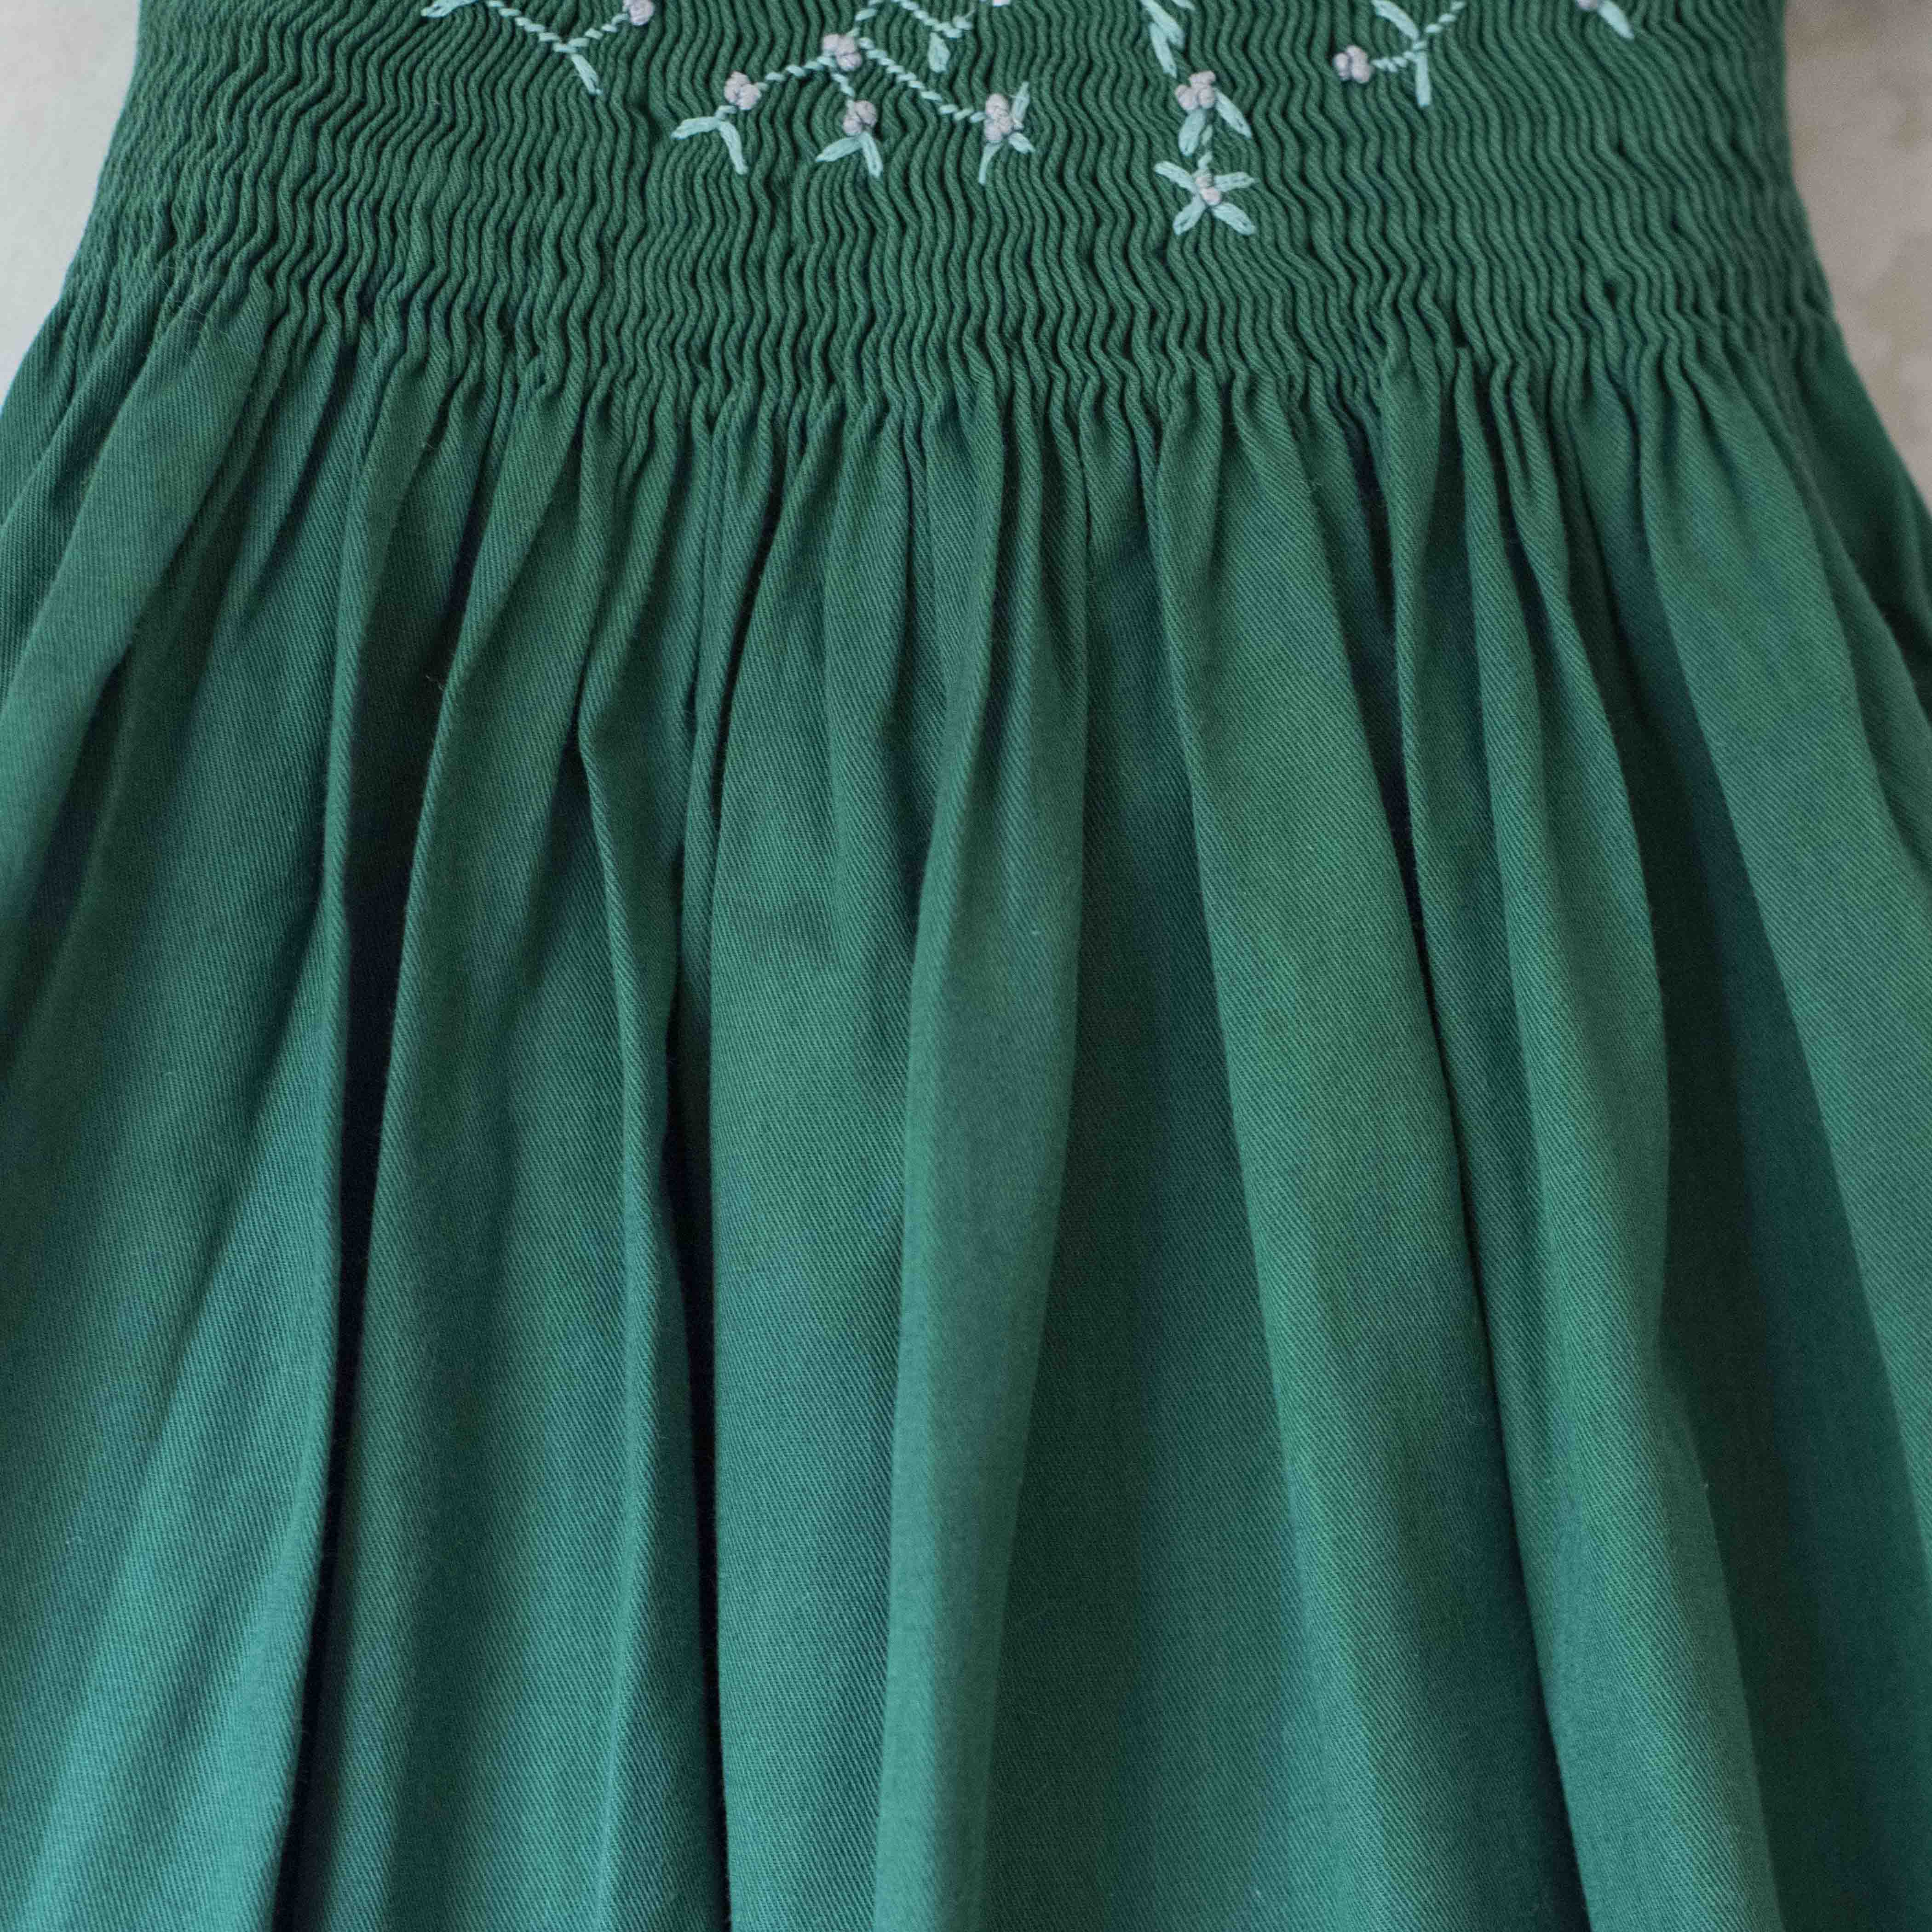 שמלה ירוקה עם רקמת פעמונים | 2-3 שנים